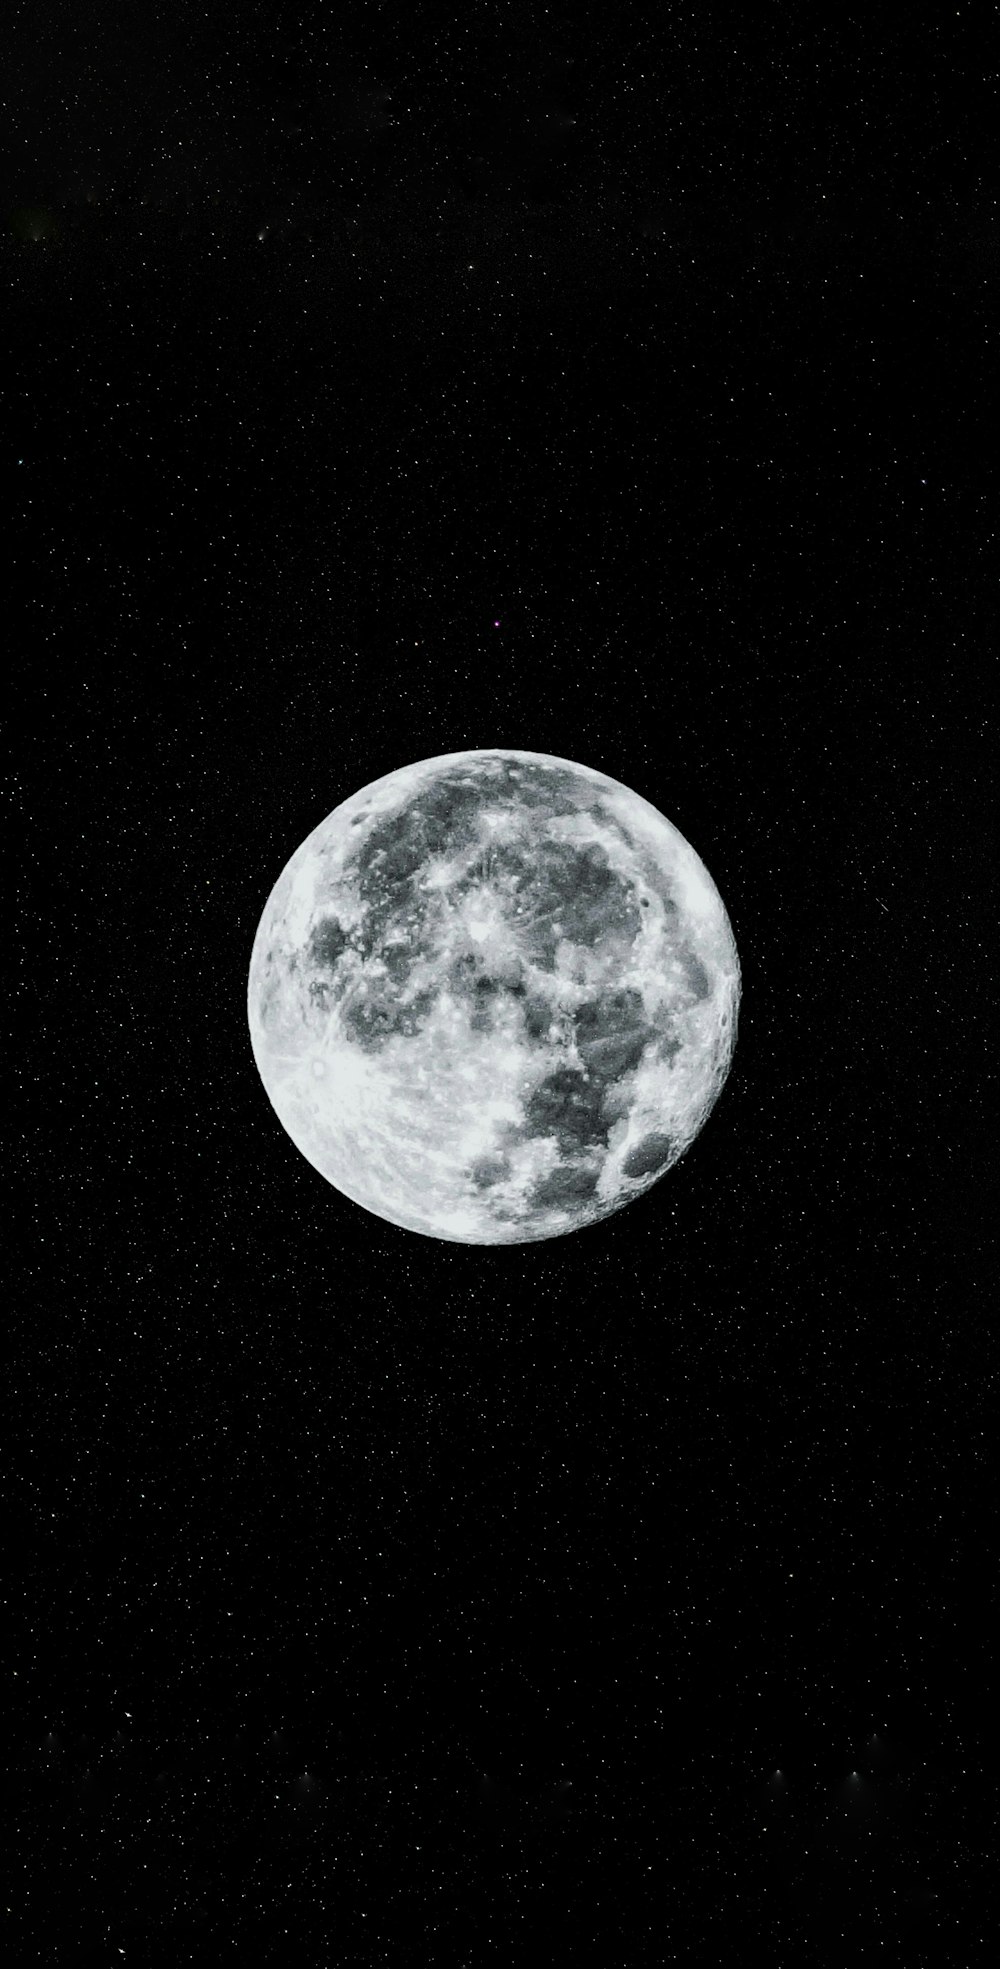 full moon on black background photo – Free Grey Image on Unsplash